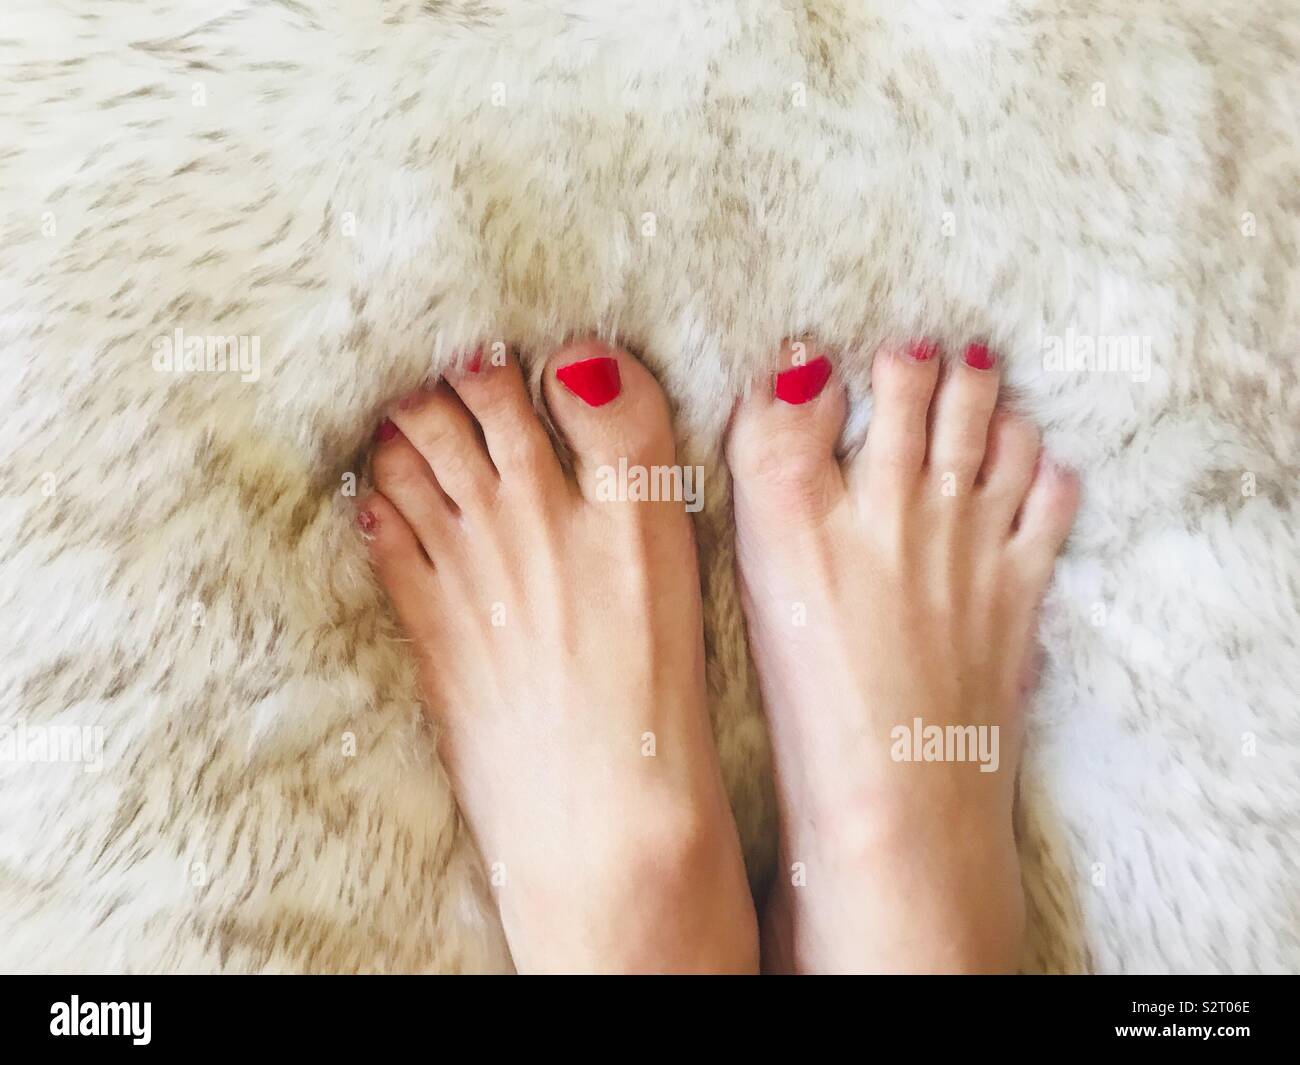 Les beaux pieds d'une femme avec des ongles rouges peints sur un oreiller doux et moelleux. Images de pieds Banque D'Images